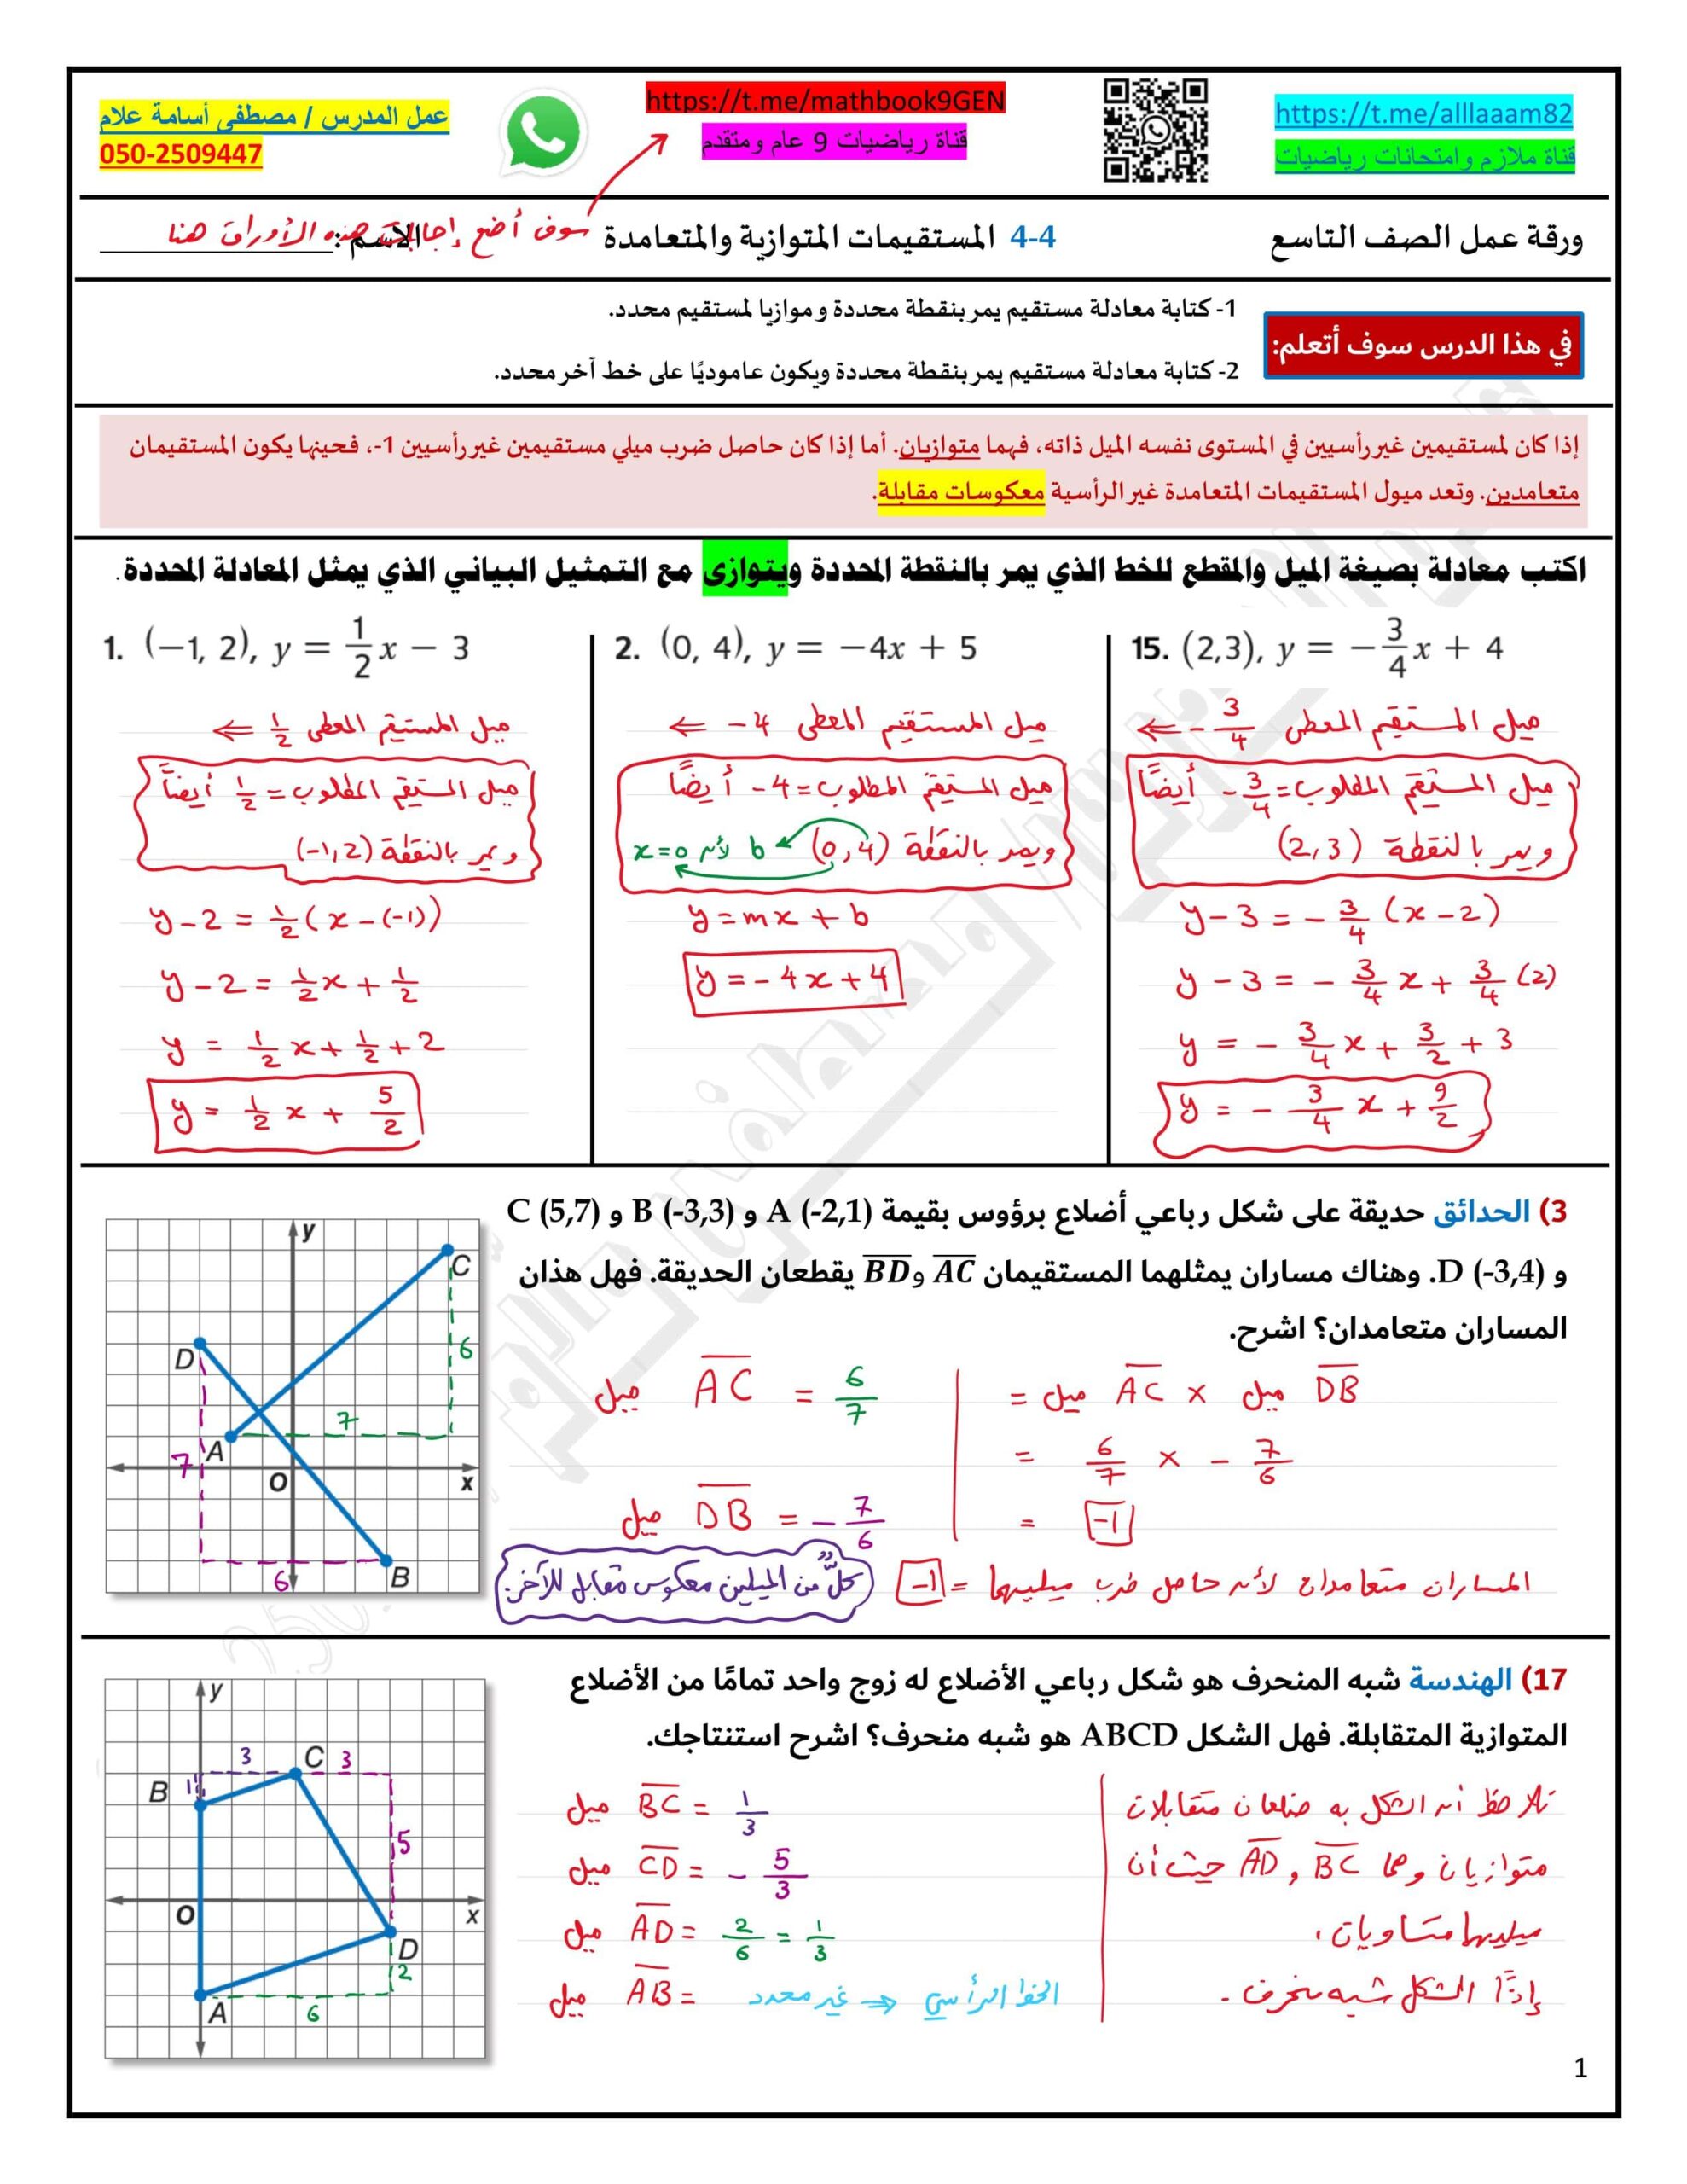 حل ورقة عمل درس المستقيمات المتوازية والمتعامدة الرياضيات المتكاملة الصف التاسع